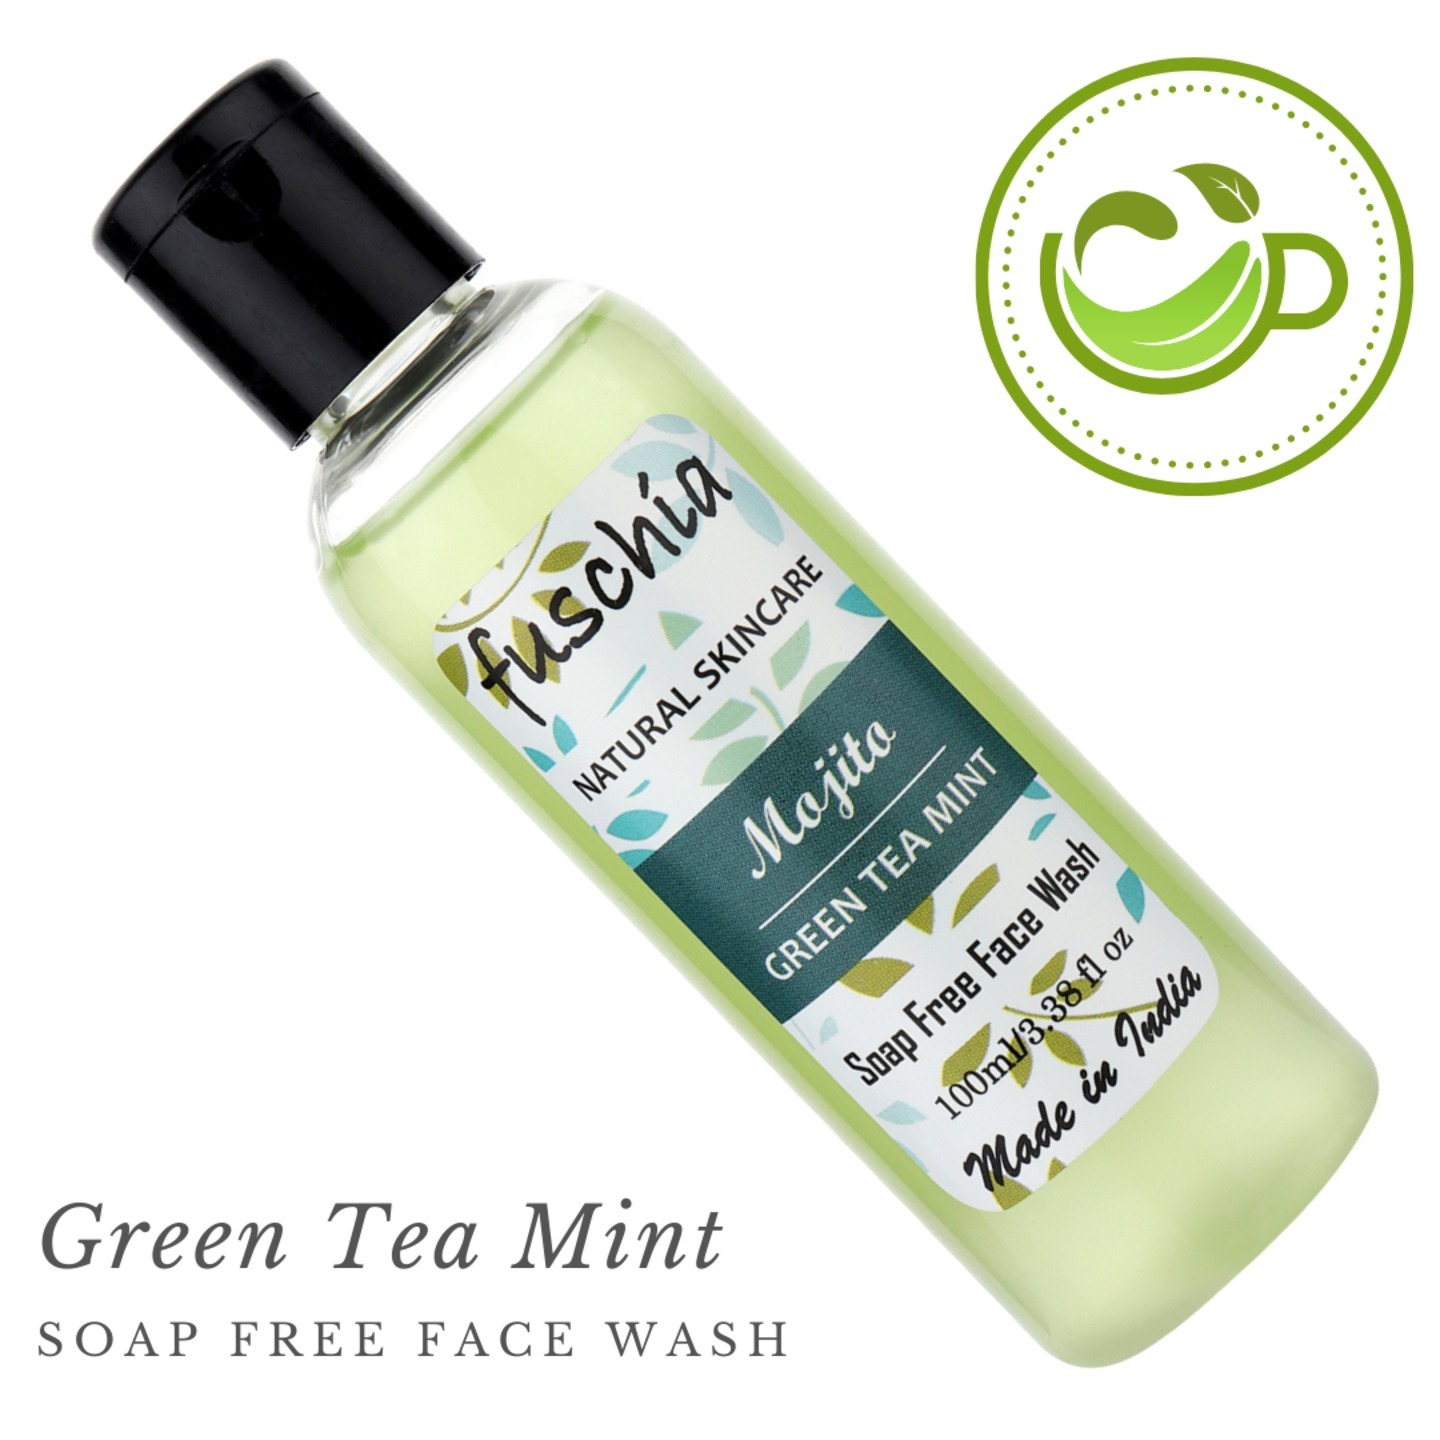 Fuschia Mojito Green Tea Mint Soap Free Face Wash - 100ml